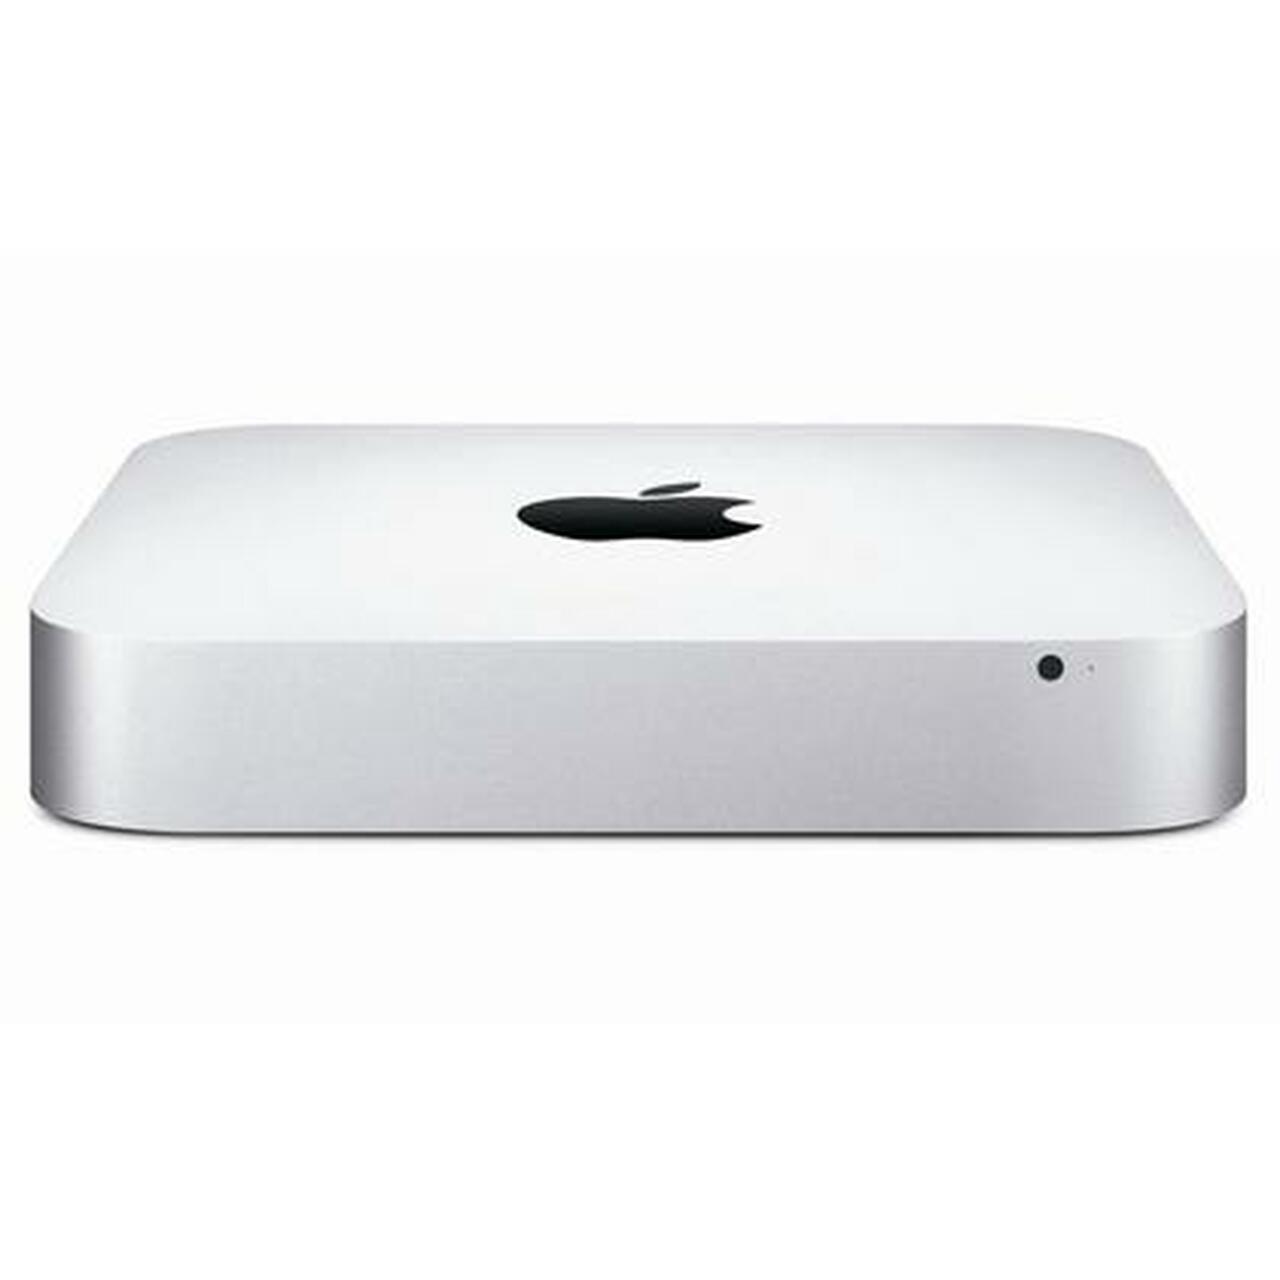 Apple Mac Mini MD388LL/A - Intel i7 / 4GB Ram / 1TB HDD / OS Catalina